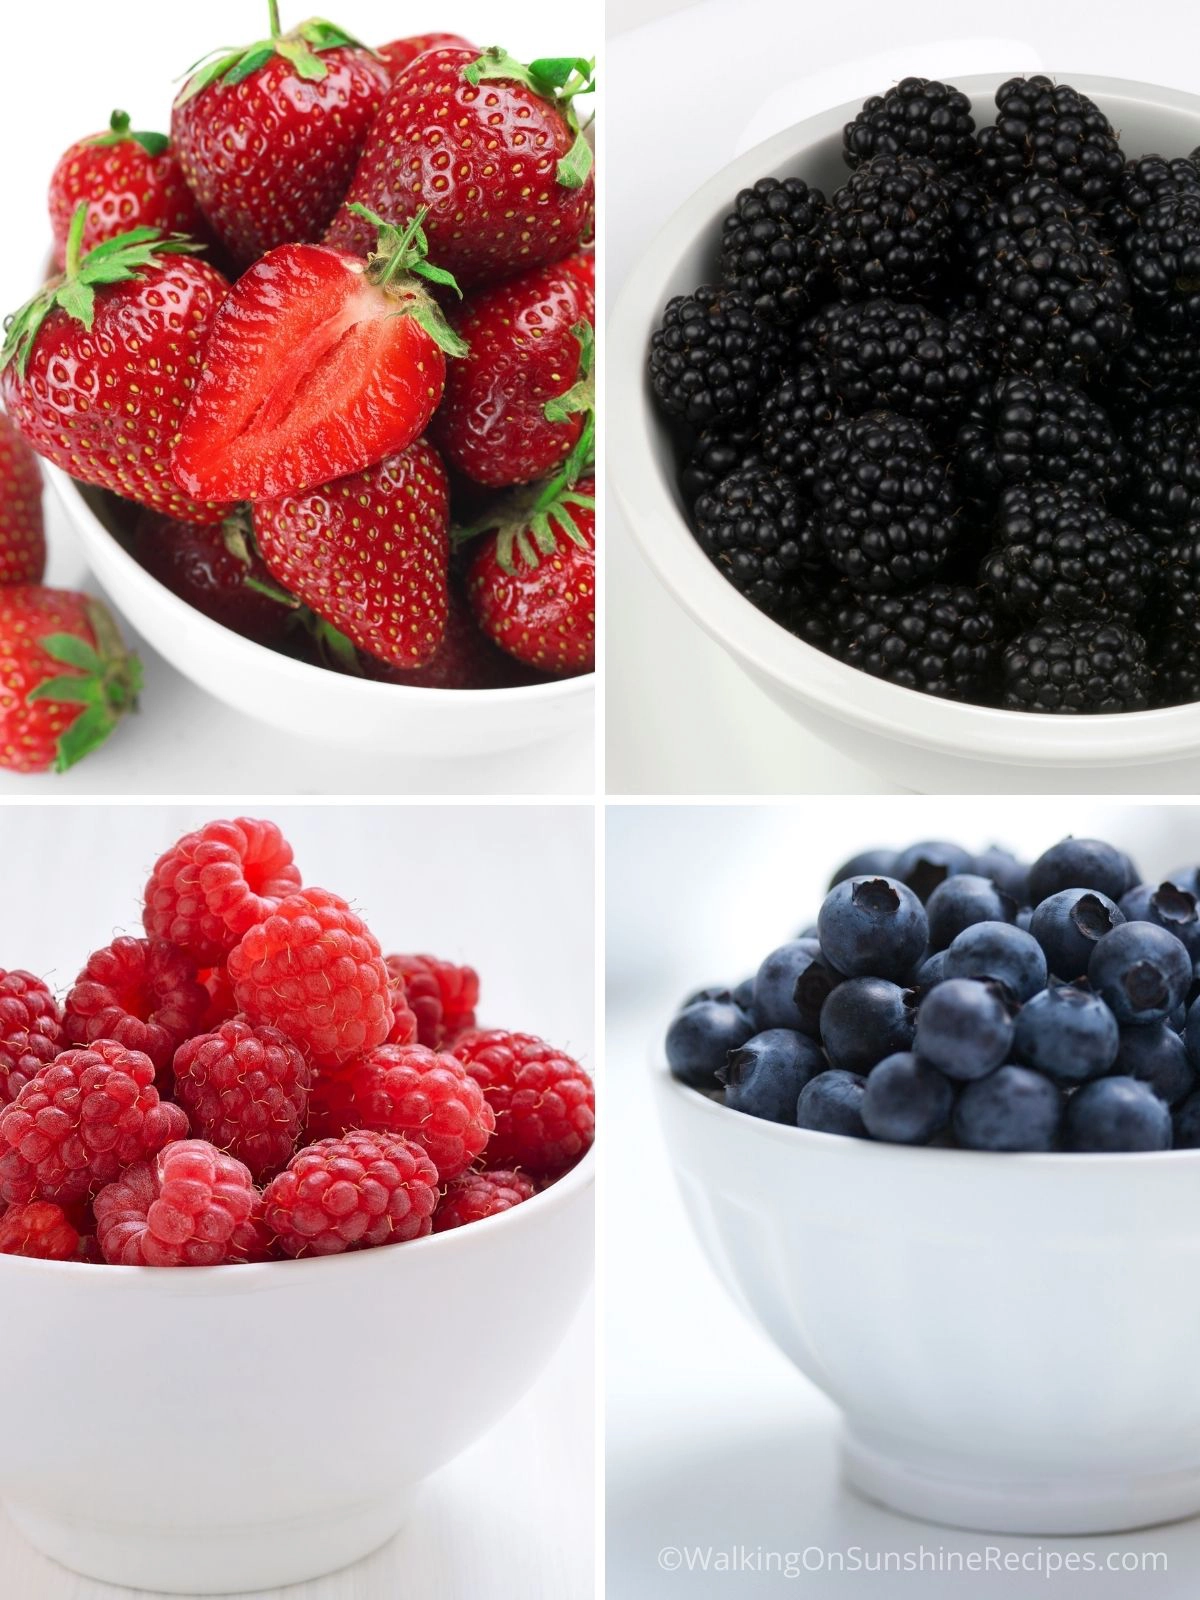 Strawberries, blackberries, raspberries and blueberries in white bowls. 